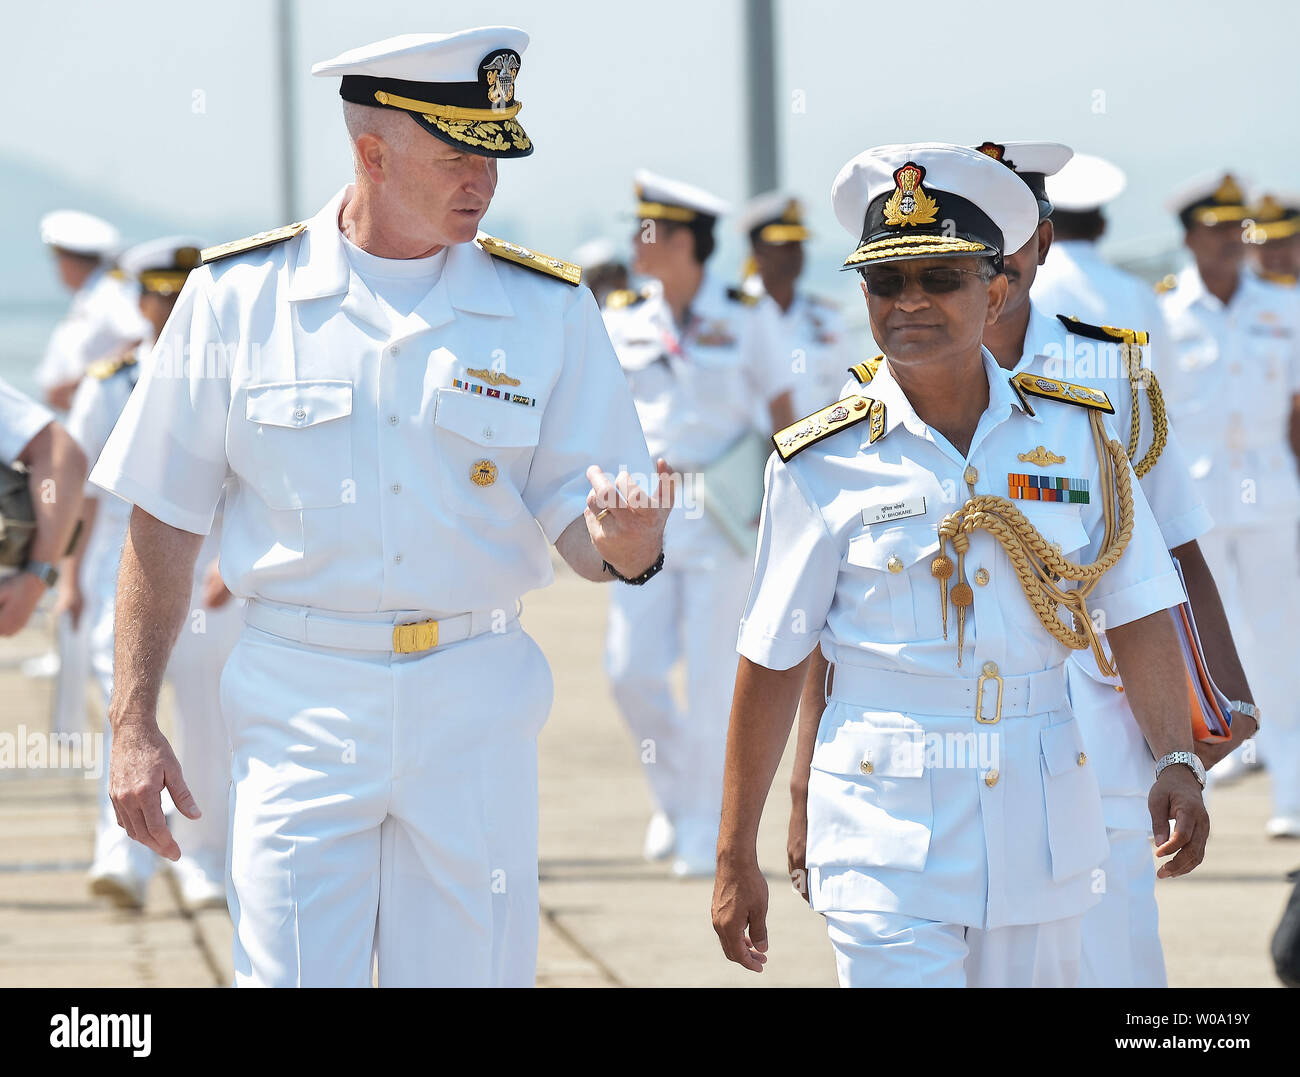 Adm posteriore. Brian S. Hurley(L), Vice comandante, U.S. 7 flotta di U.S. Navy cammina con l'ammiraglio posteriore Soonil V Bhokare, Commander, Est della Flotta della Marina indiana a U.S. Le attività della flotta Sasebo, Prefettura di Nagasaki, Giappone il 10 giugno 2016. Foto di Keizo Mori/UPI Foto Stock